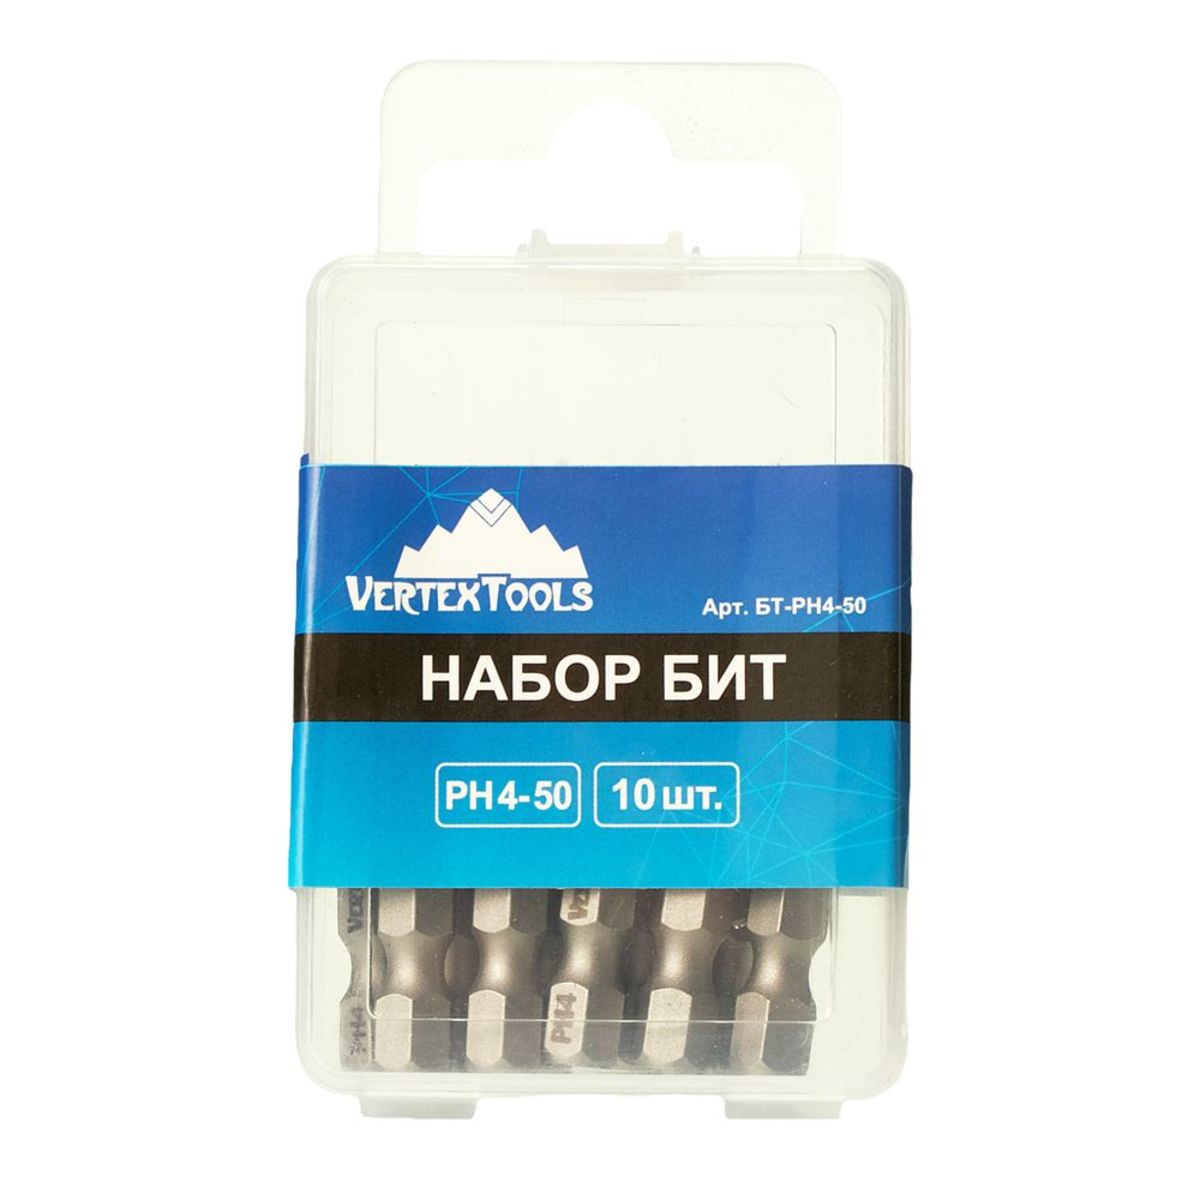 Набор бит vertextools 33 предмета, адаптер. Набор пильных венцов vertextools 0282-11 19-67 мм. Насадка vertextools. Vertex tools